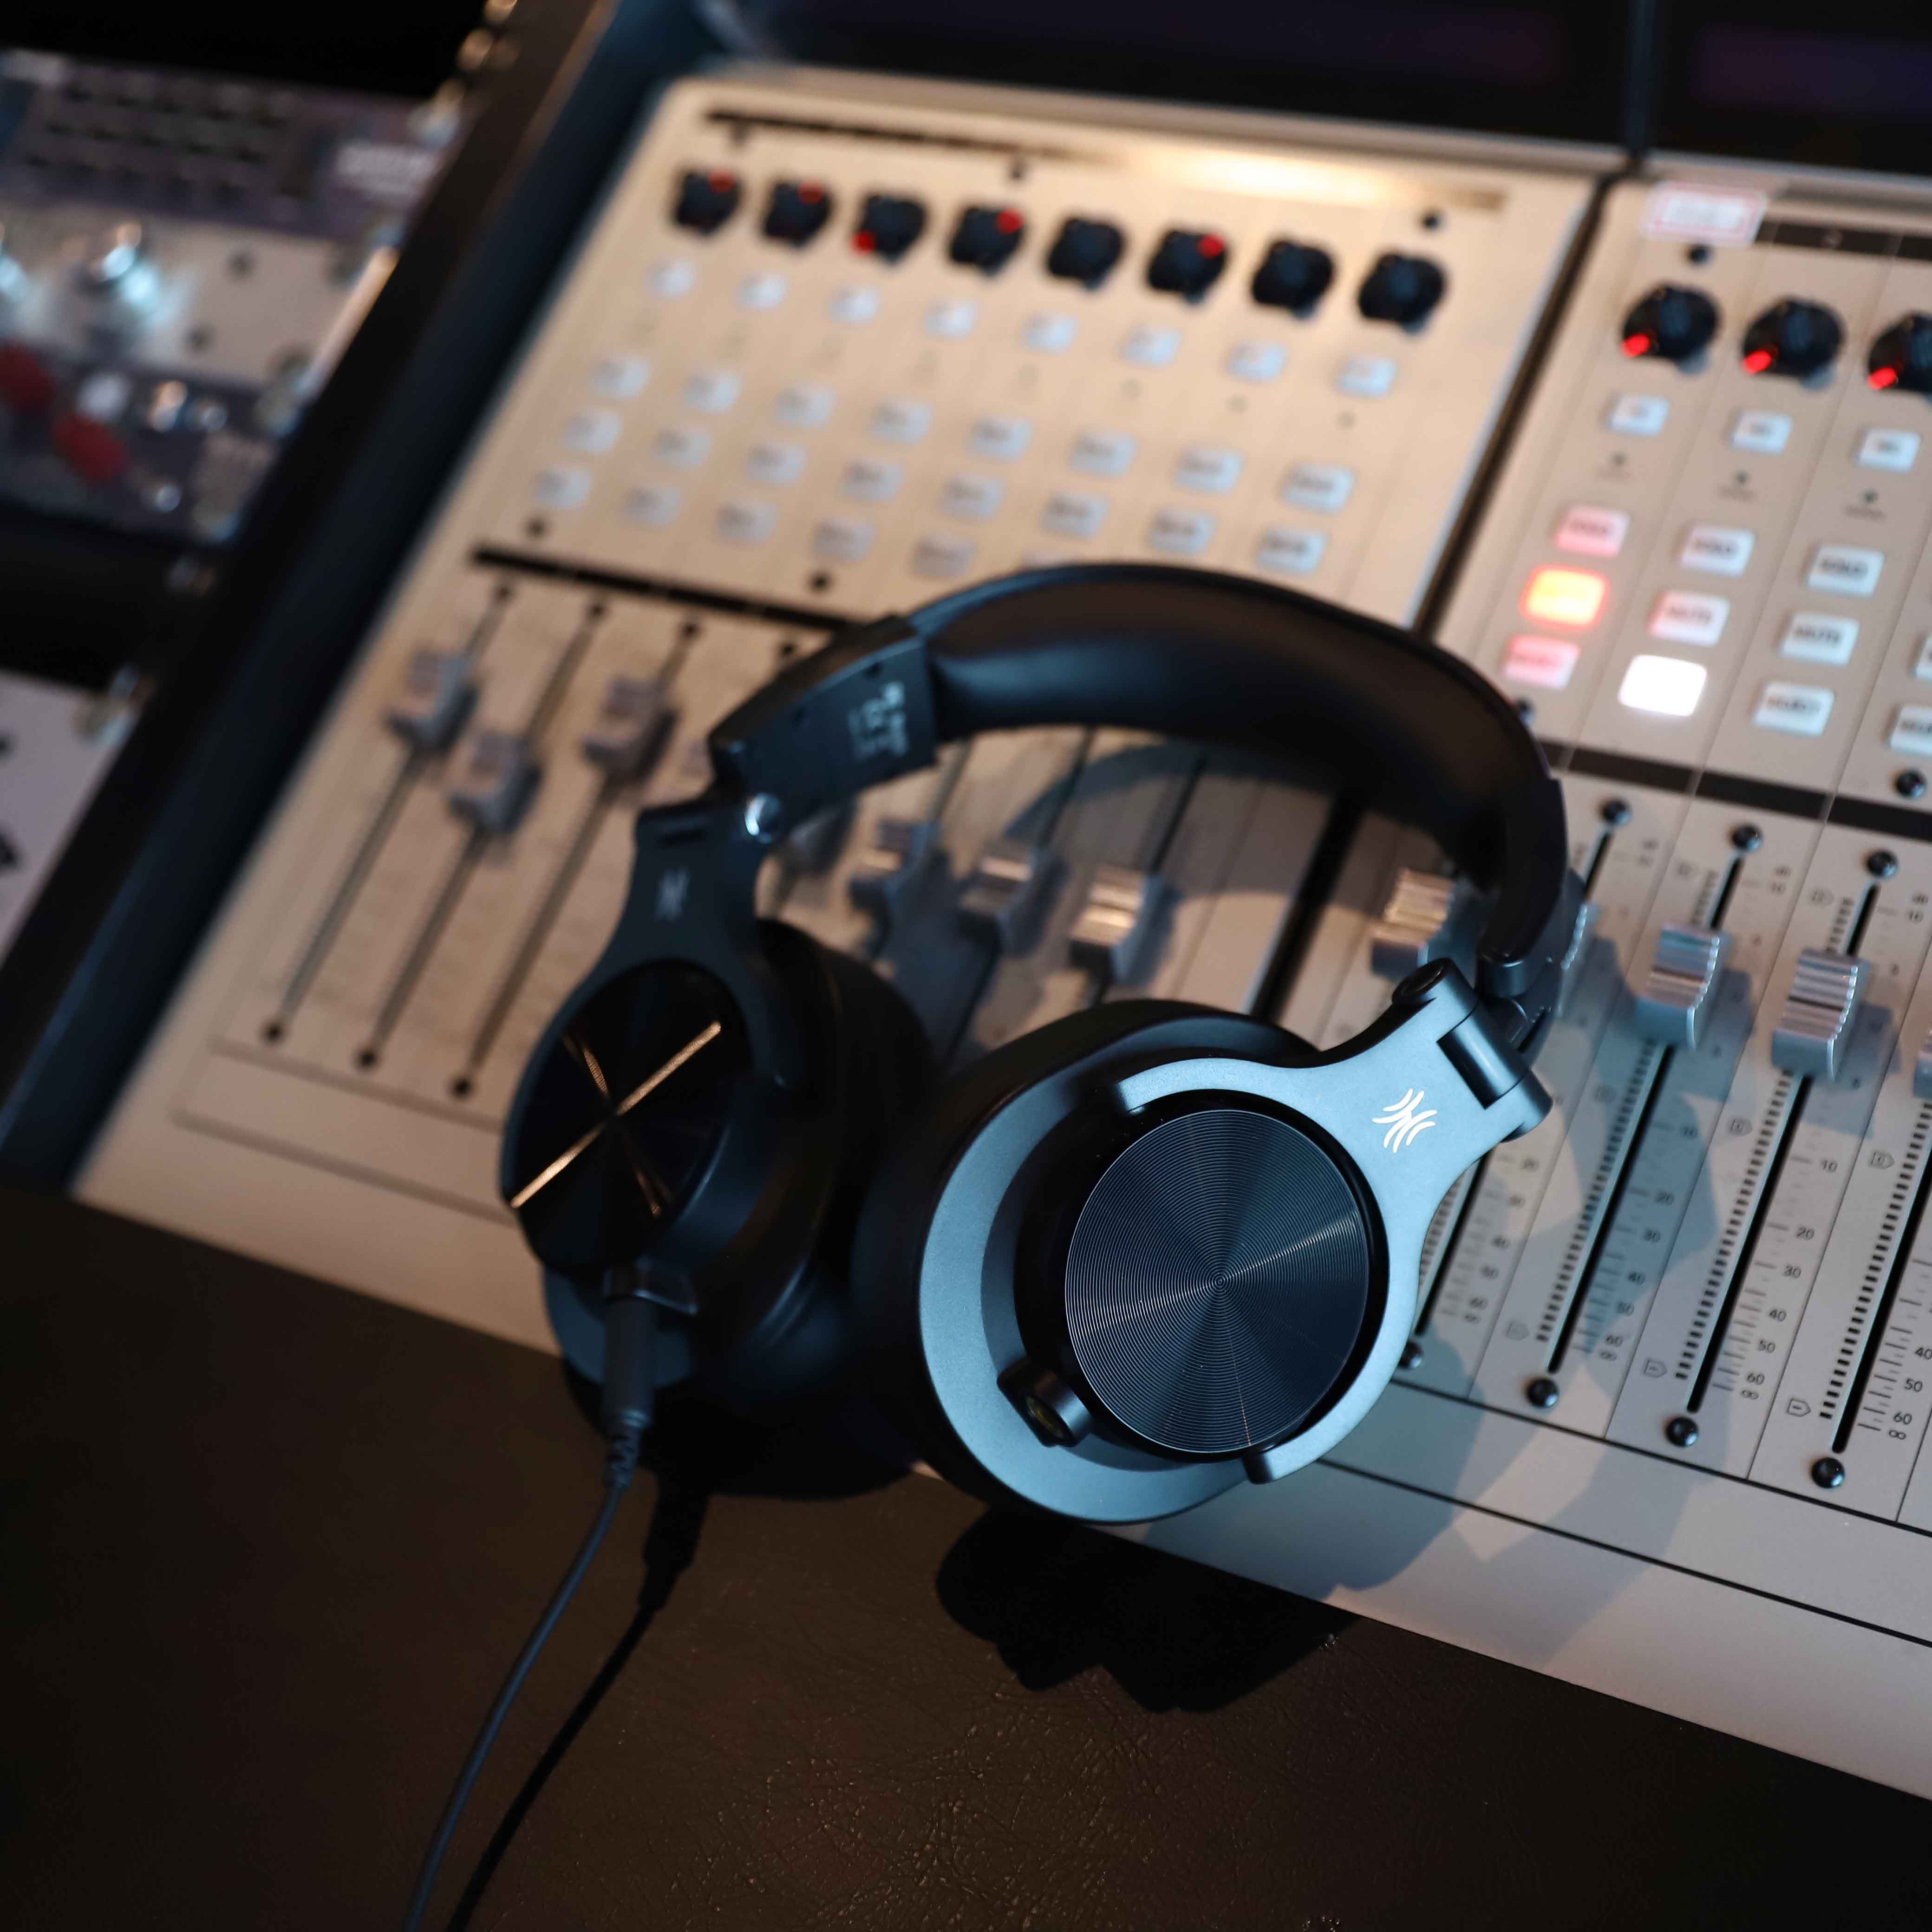 auriculares bluetooth Oneodio Fusion A70-X, Hi-Res Audio Over Ear cascos  inalámbricos Bluetooth 5.2 con